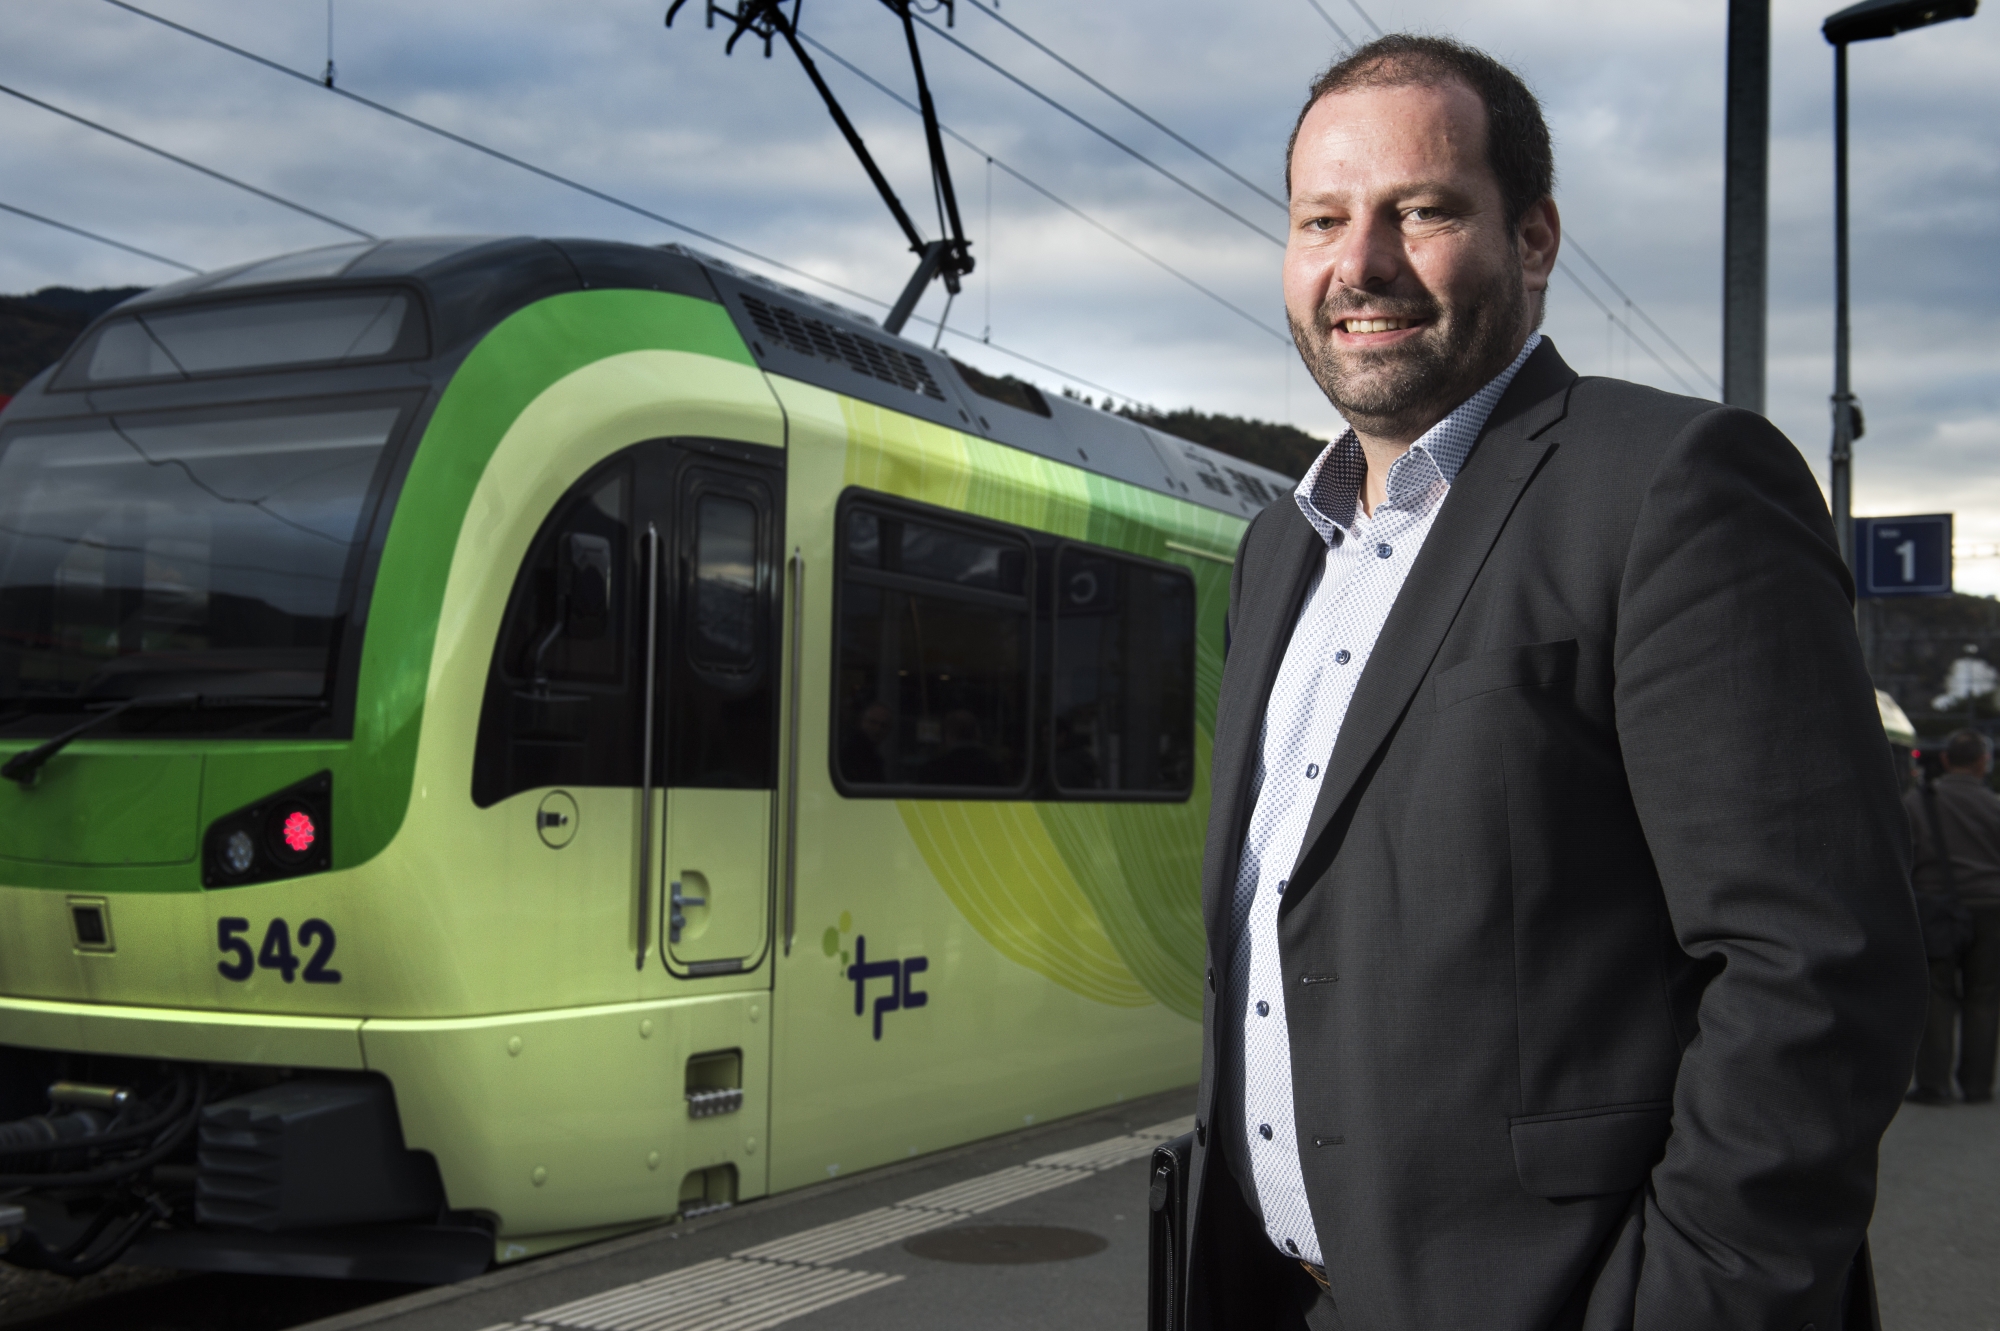 Grégoire Praz est globalement un directeur satisfait du soutien de Berne en faveur des Transports publics du Chablais qu'il dirige. Reste le gros bémol de l'Aigle - Leysin.